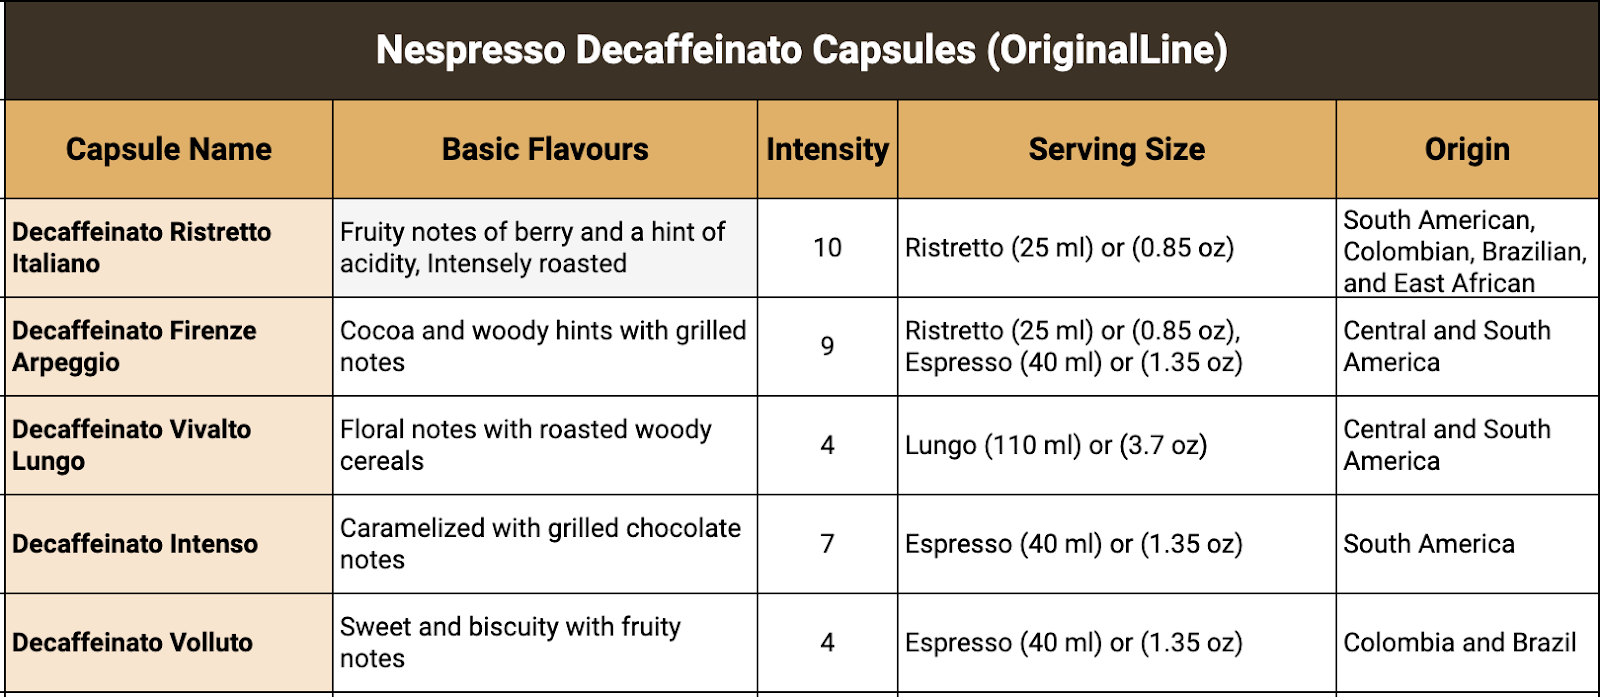 Nespresso Decaffeinato Capsules (original line)